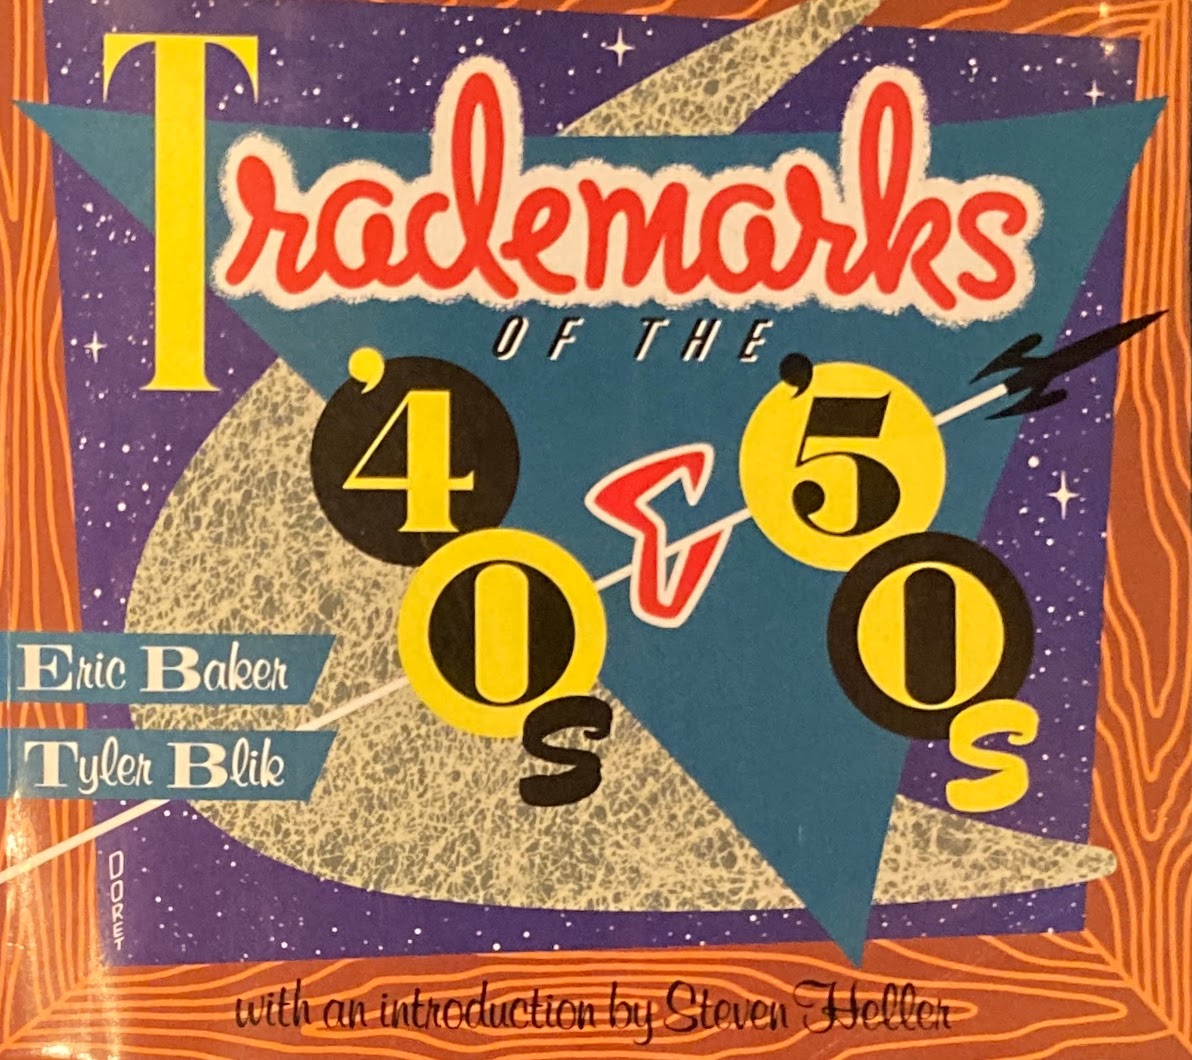 Trademarks　40's&50's　Erc Baker＆Tyler Blik